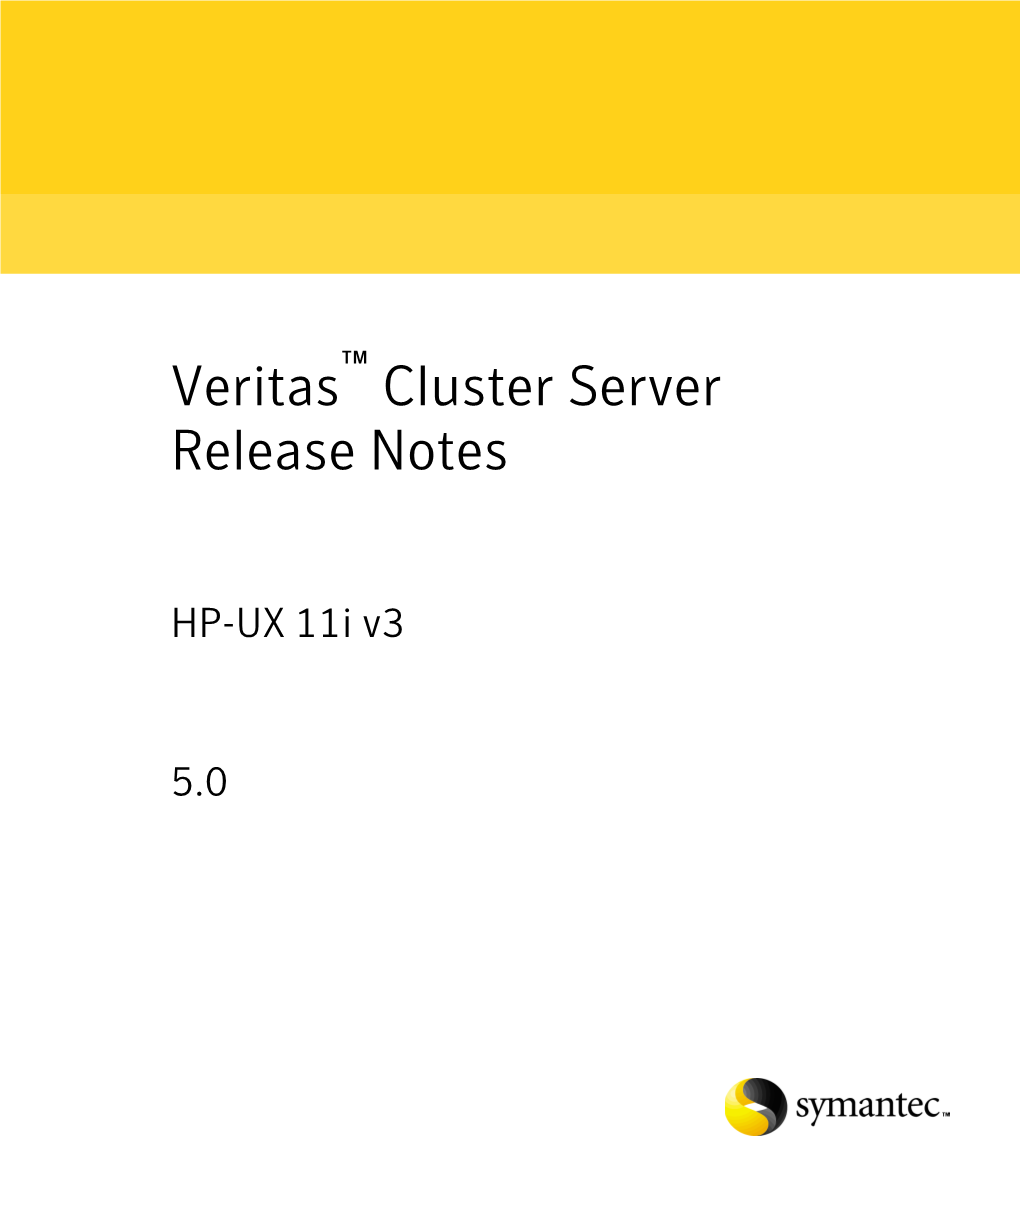 Cluster Server Release Notes